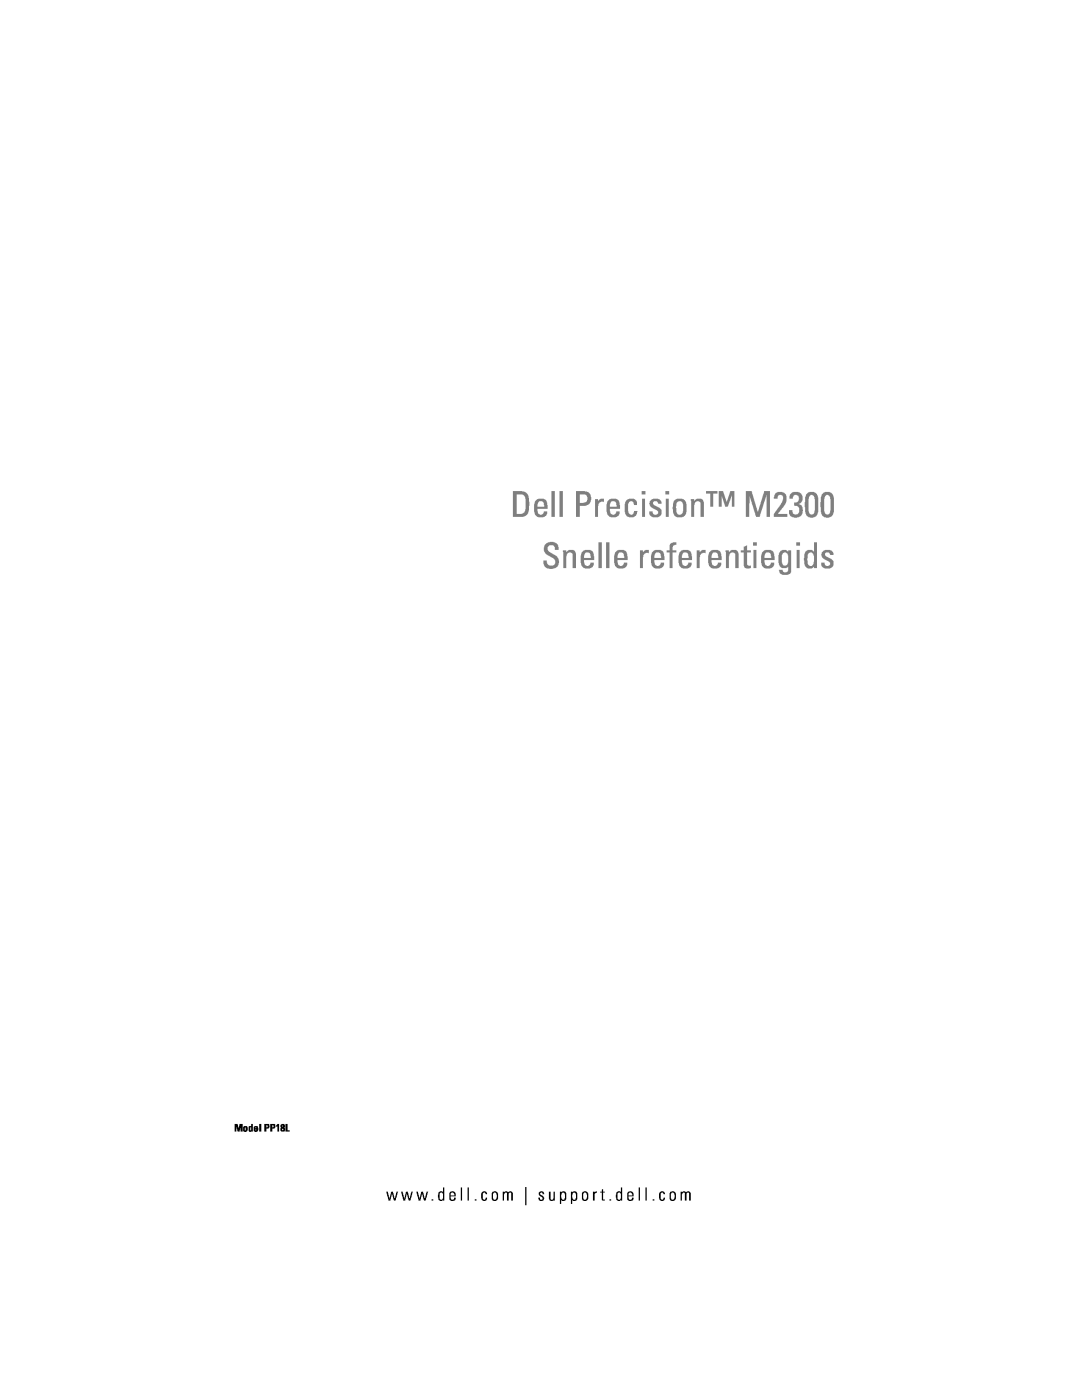 Dell PP18L manual Dell Precision M2300 Snelle referentiegids, w w w . d e l l . c o m s u p p o r t . d e l l . c o m 